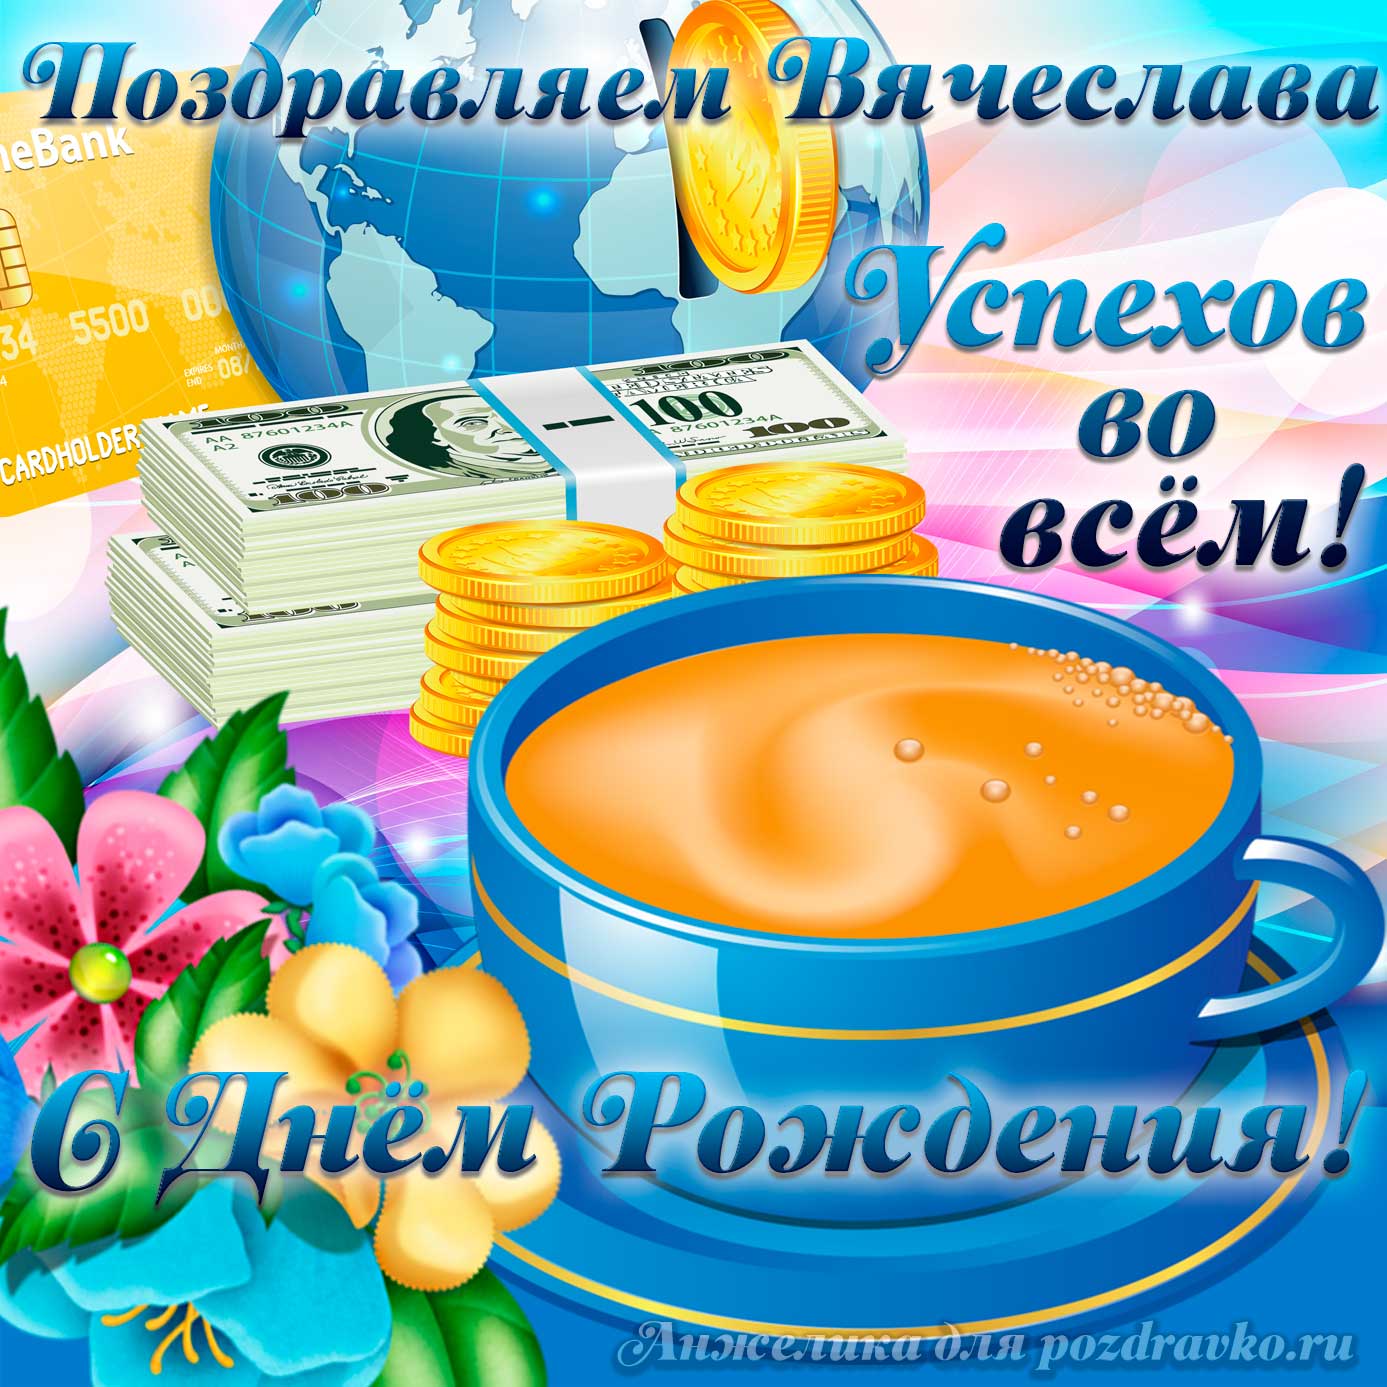 Открытка - поздравляем Вячеслава с Днем Рождения желаем успехов во всём. Скачать бесплатно или отправить картинку.